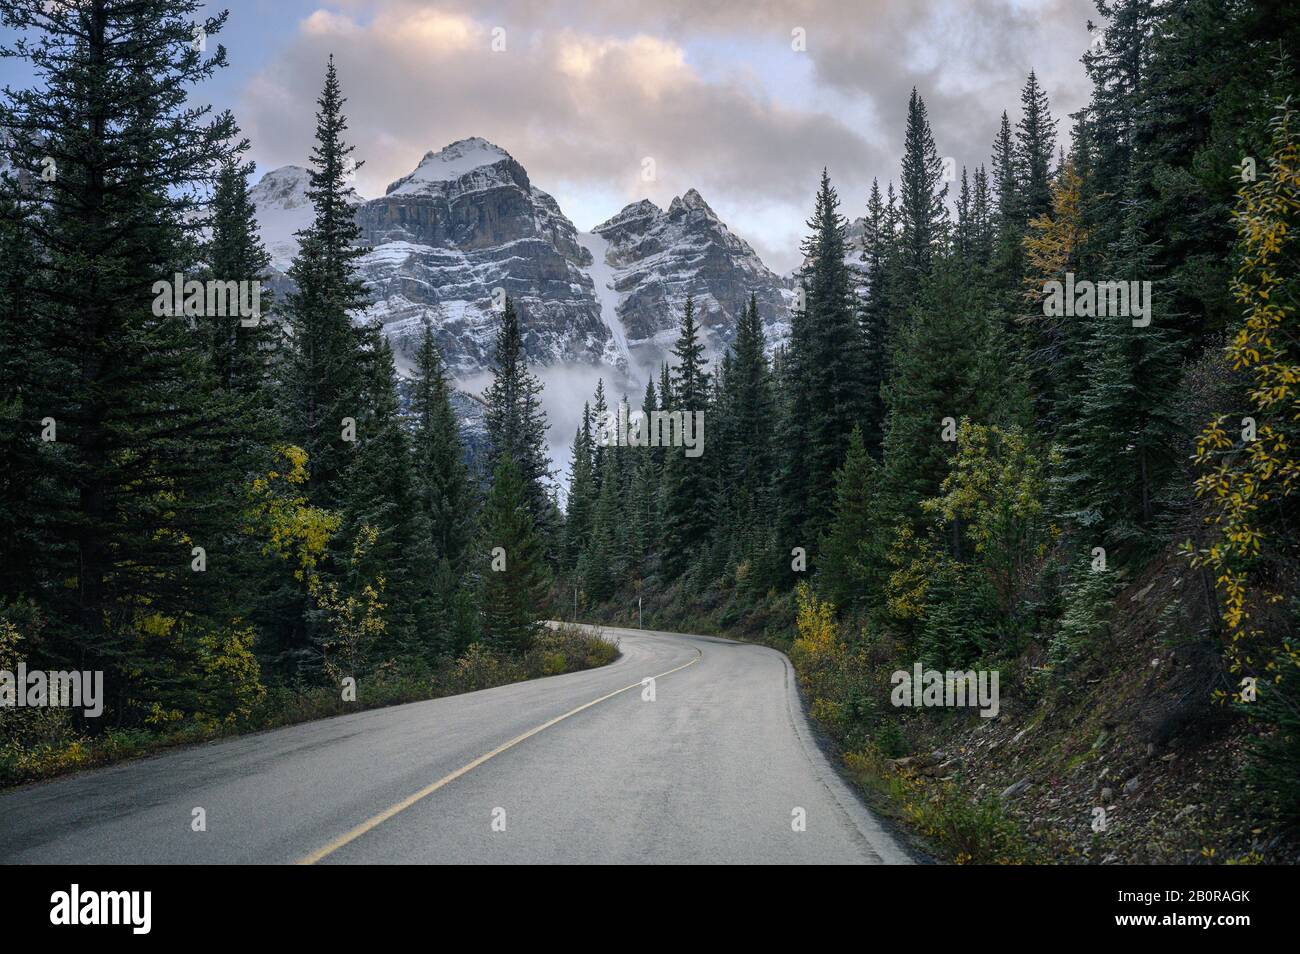 Route avec montagnes rocheuses dans la forêt de pins du lac Moraine dans le parc national Banff, Canada Banque D'Images